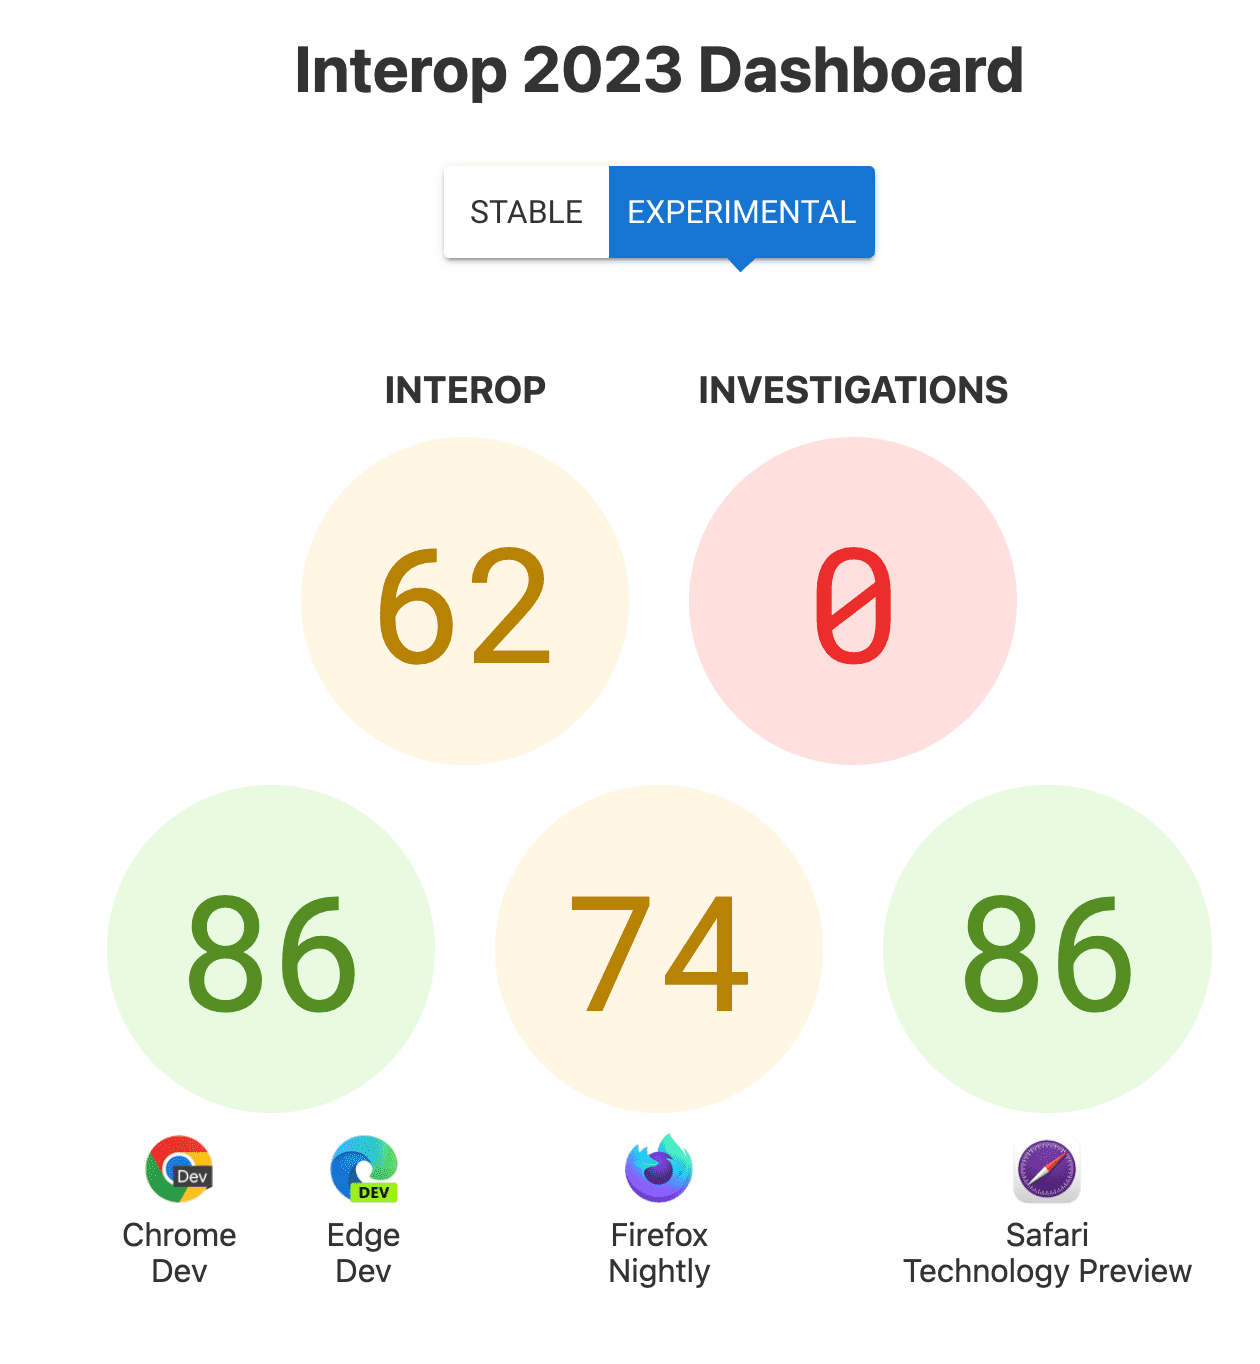 คะแนนสำหรับการทำงานร่วมกันโดยรวมคือ 62, การตรวจสอบ: 0 และคะแนนต่อเบราว์เซอร์ คือ 86 สำหรับ Chrome และ Edge, 74 สำหรับ Firefox, 86 สำหรับ Safari Technology Preview